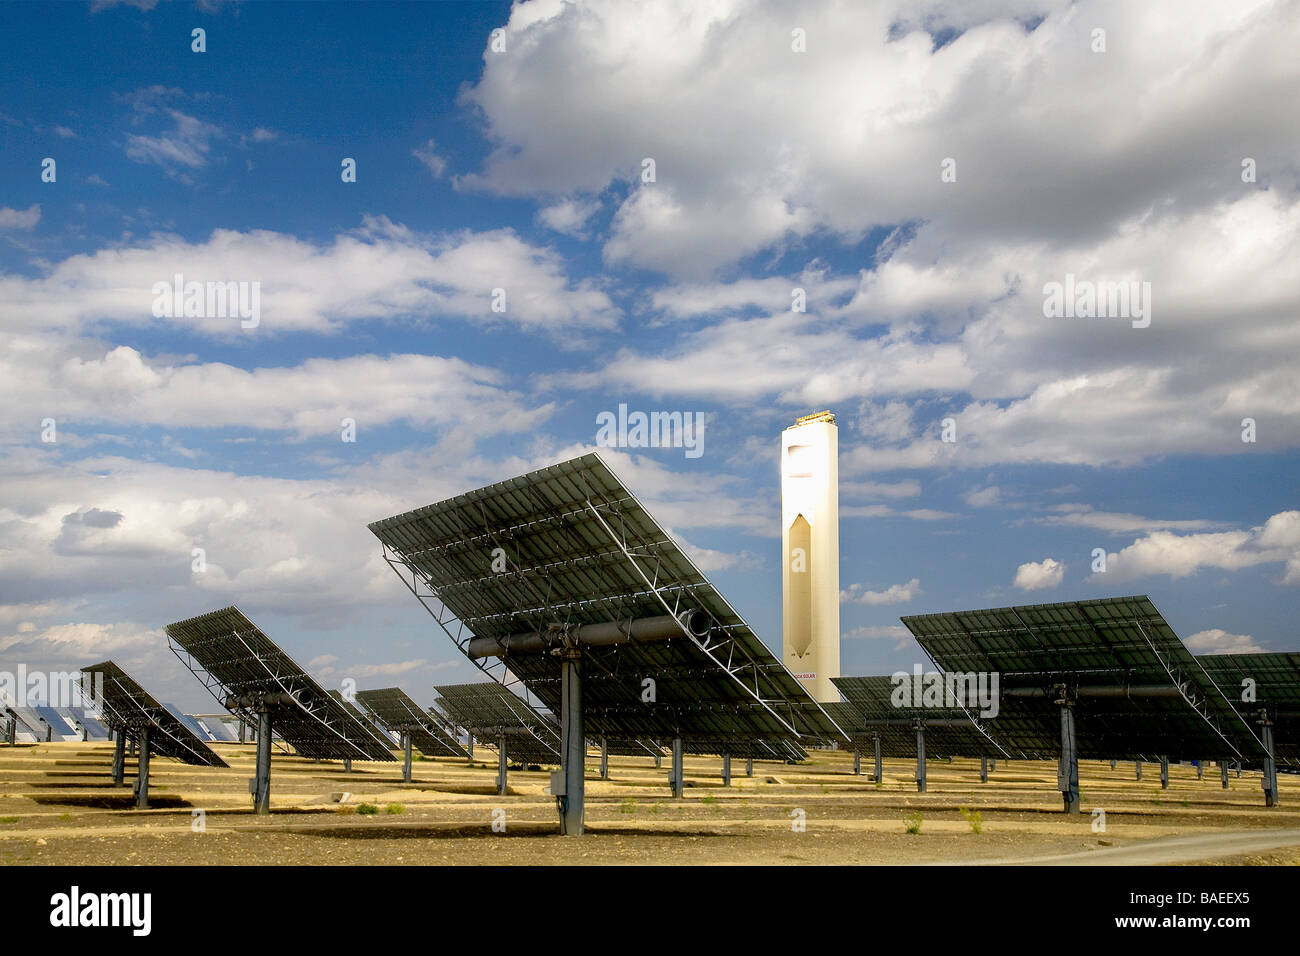 Gli specchi riflettono la luce del sole sul primo del mondo termoelettrici commerciali torre solare impianto, vicino a Siviglia, Spagna Foto Stock